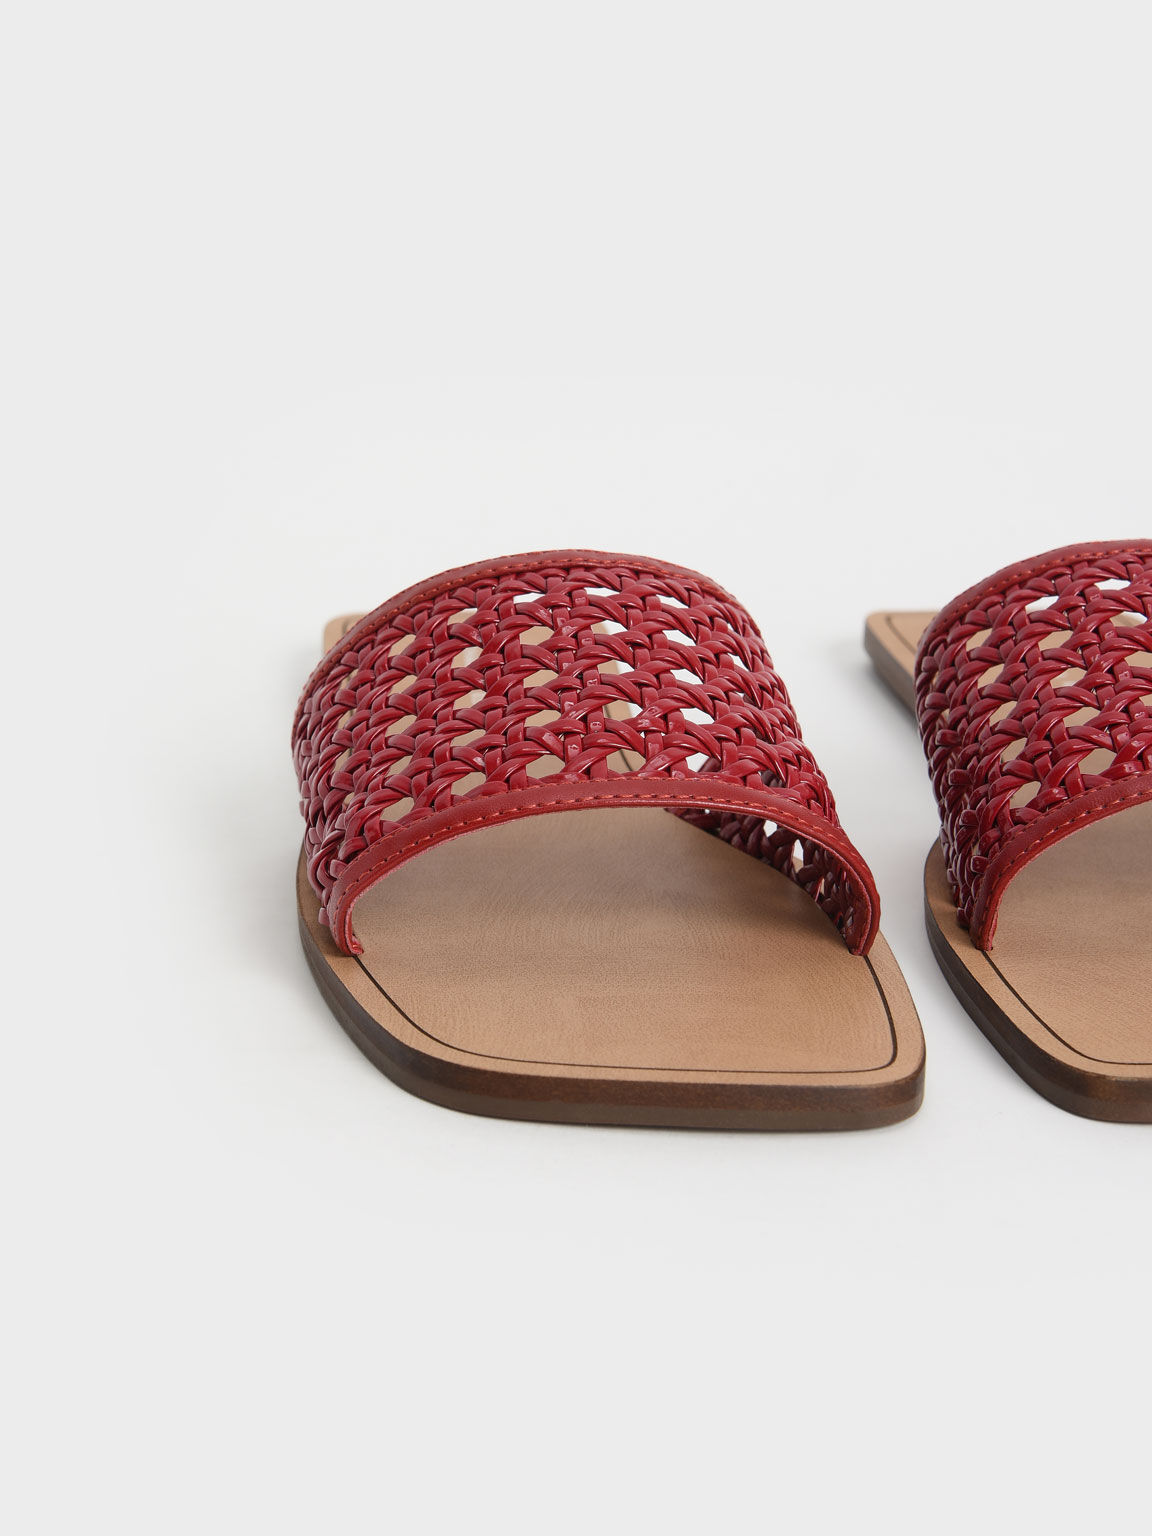 Woven Slide Sandals, Red, hi-res